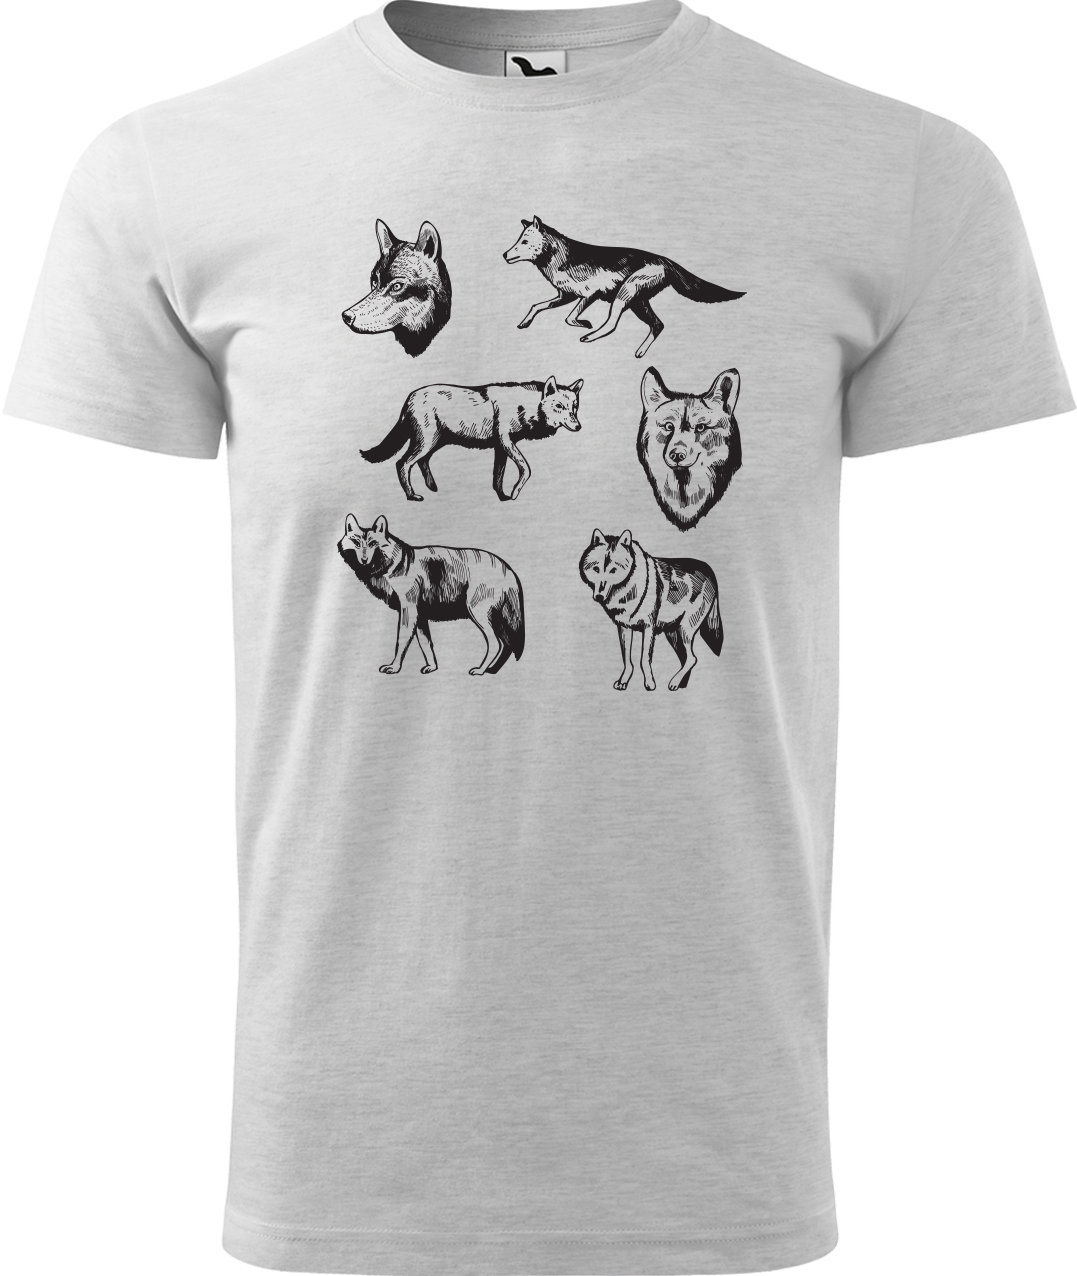 Pánské tričko s vlkem - Vlci Velikost: XL, Barva: Světle šedý melír (03), Střih: pánský